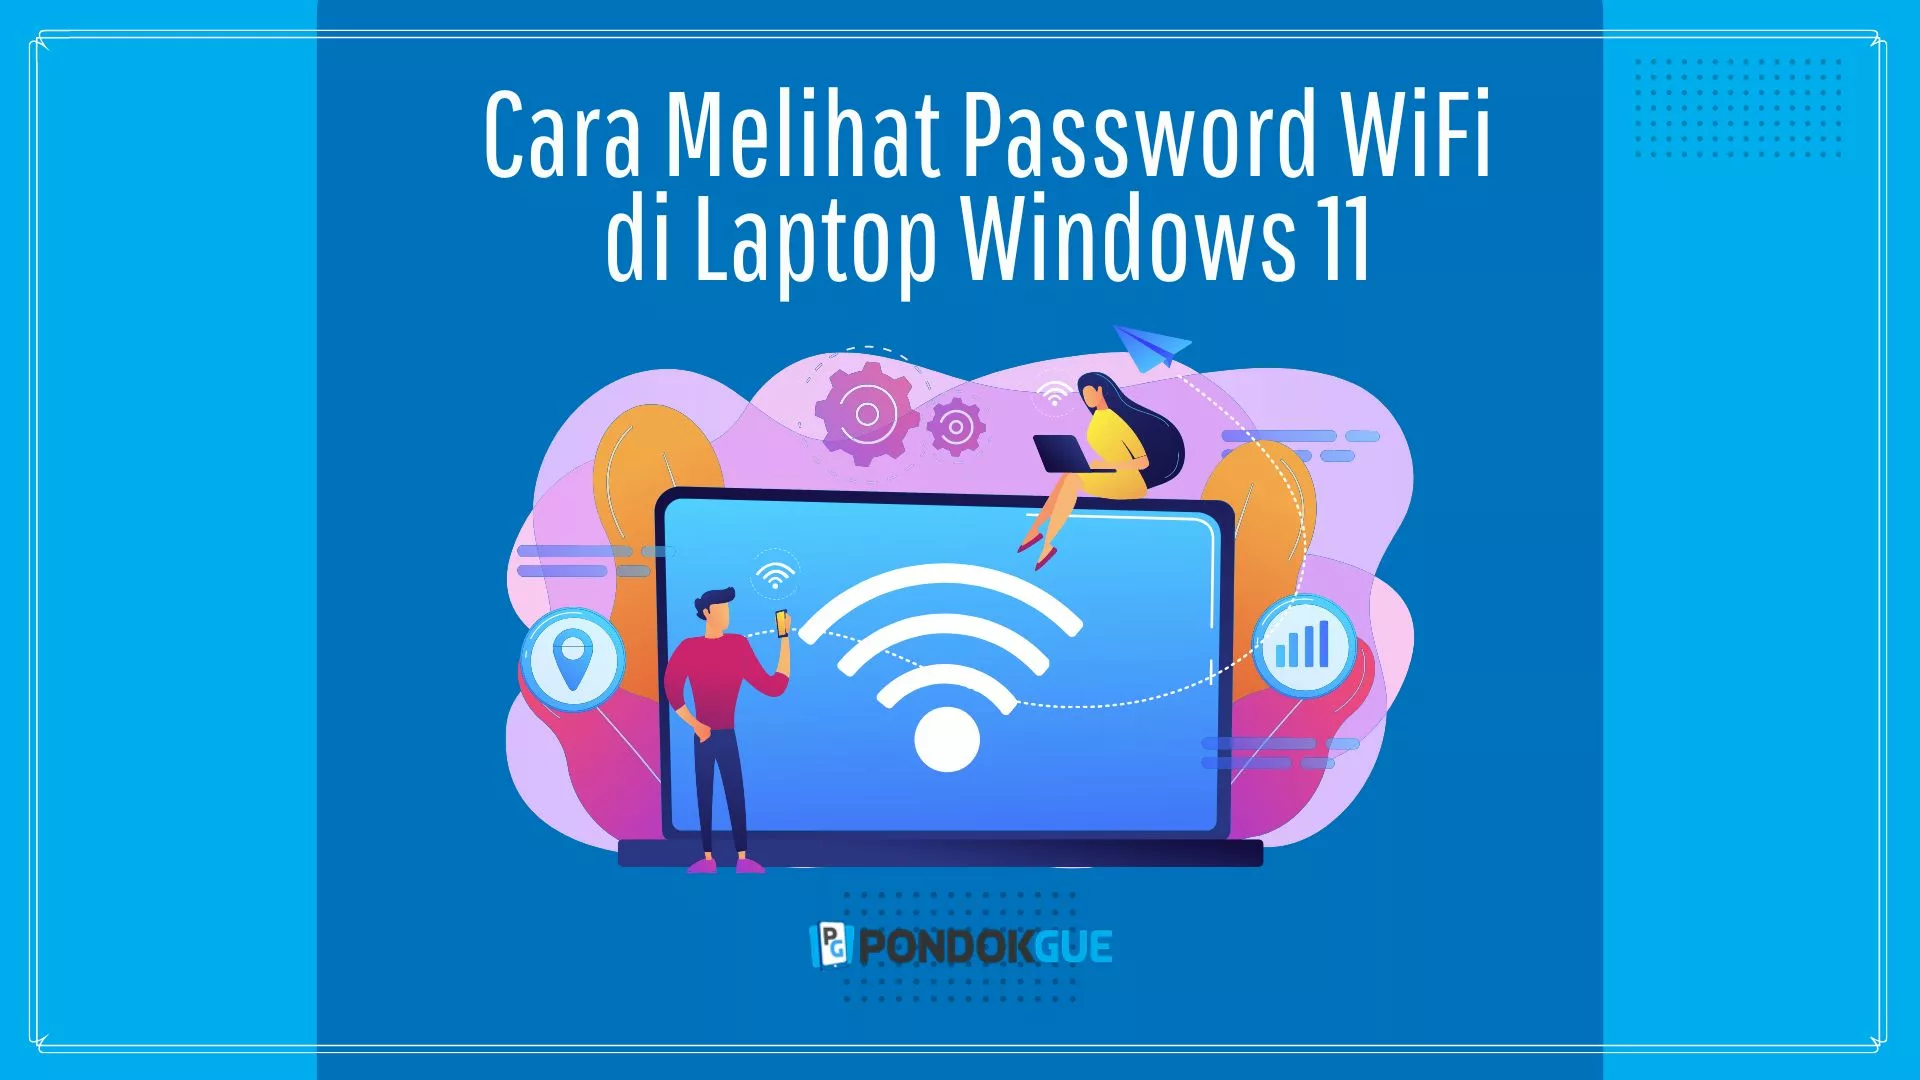 Cara Melihat Password WiFi di Laptop Windows 11 - Pondokgue.com